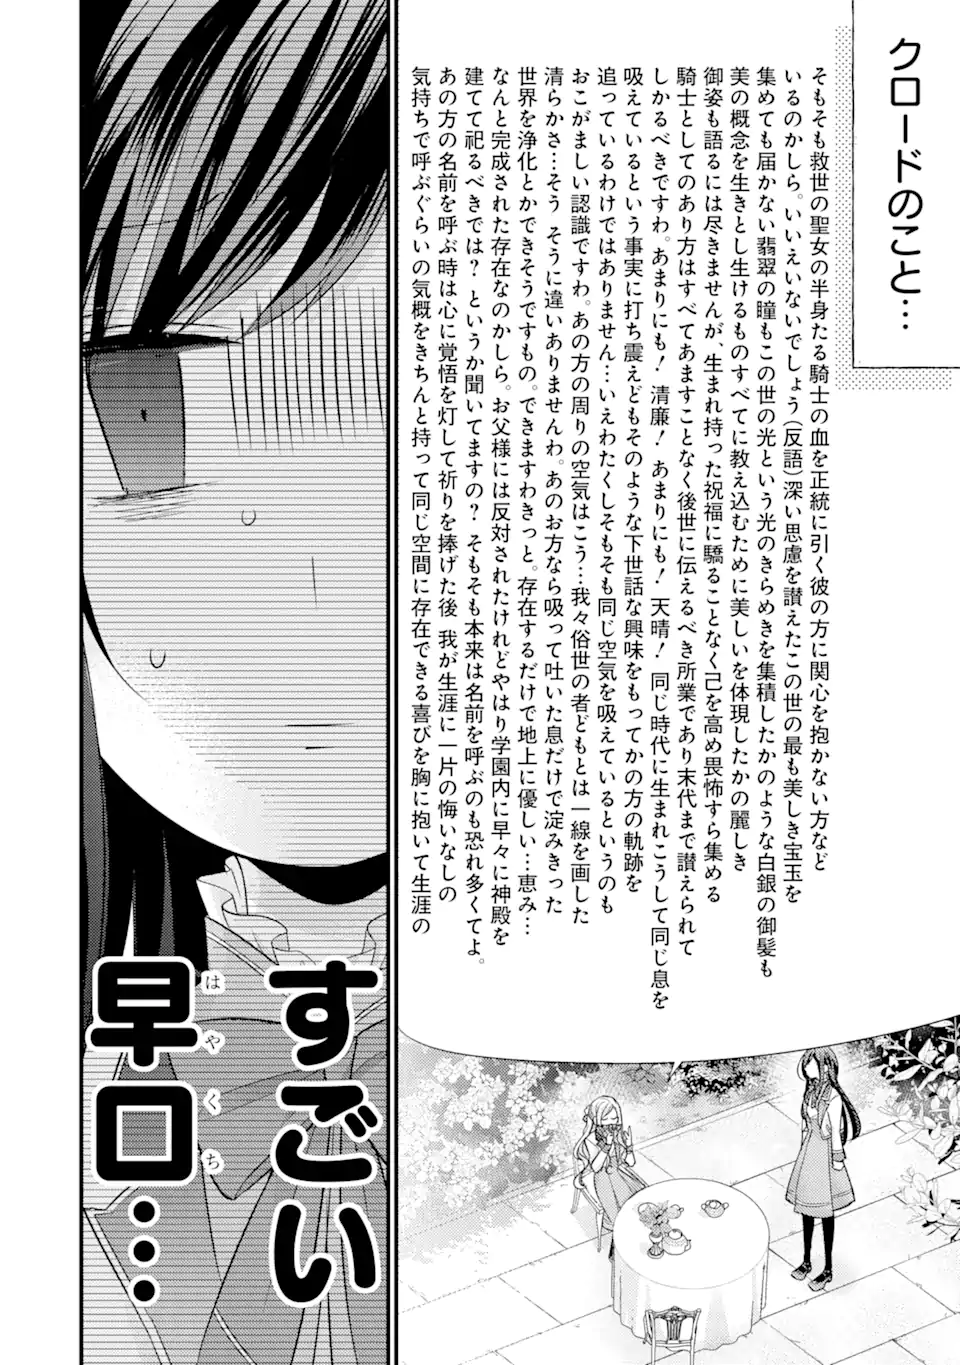 Kekkon suru Shinde Shimau no de, Kanst Seijo (Lv. 99) wa Meshi Tero Shimasu! - Chapter 6.1 - Page 10